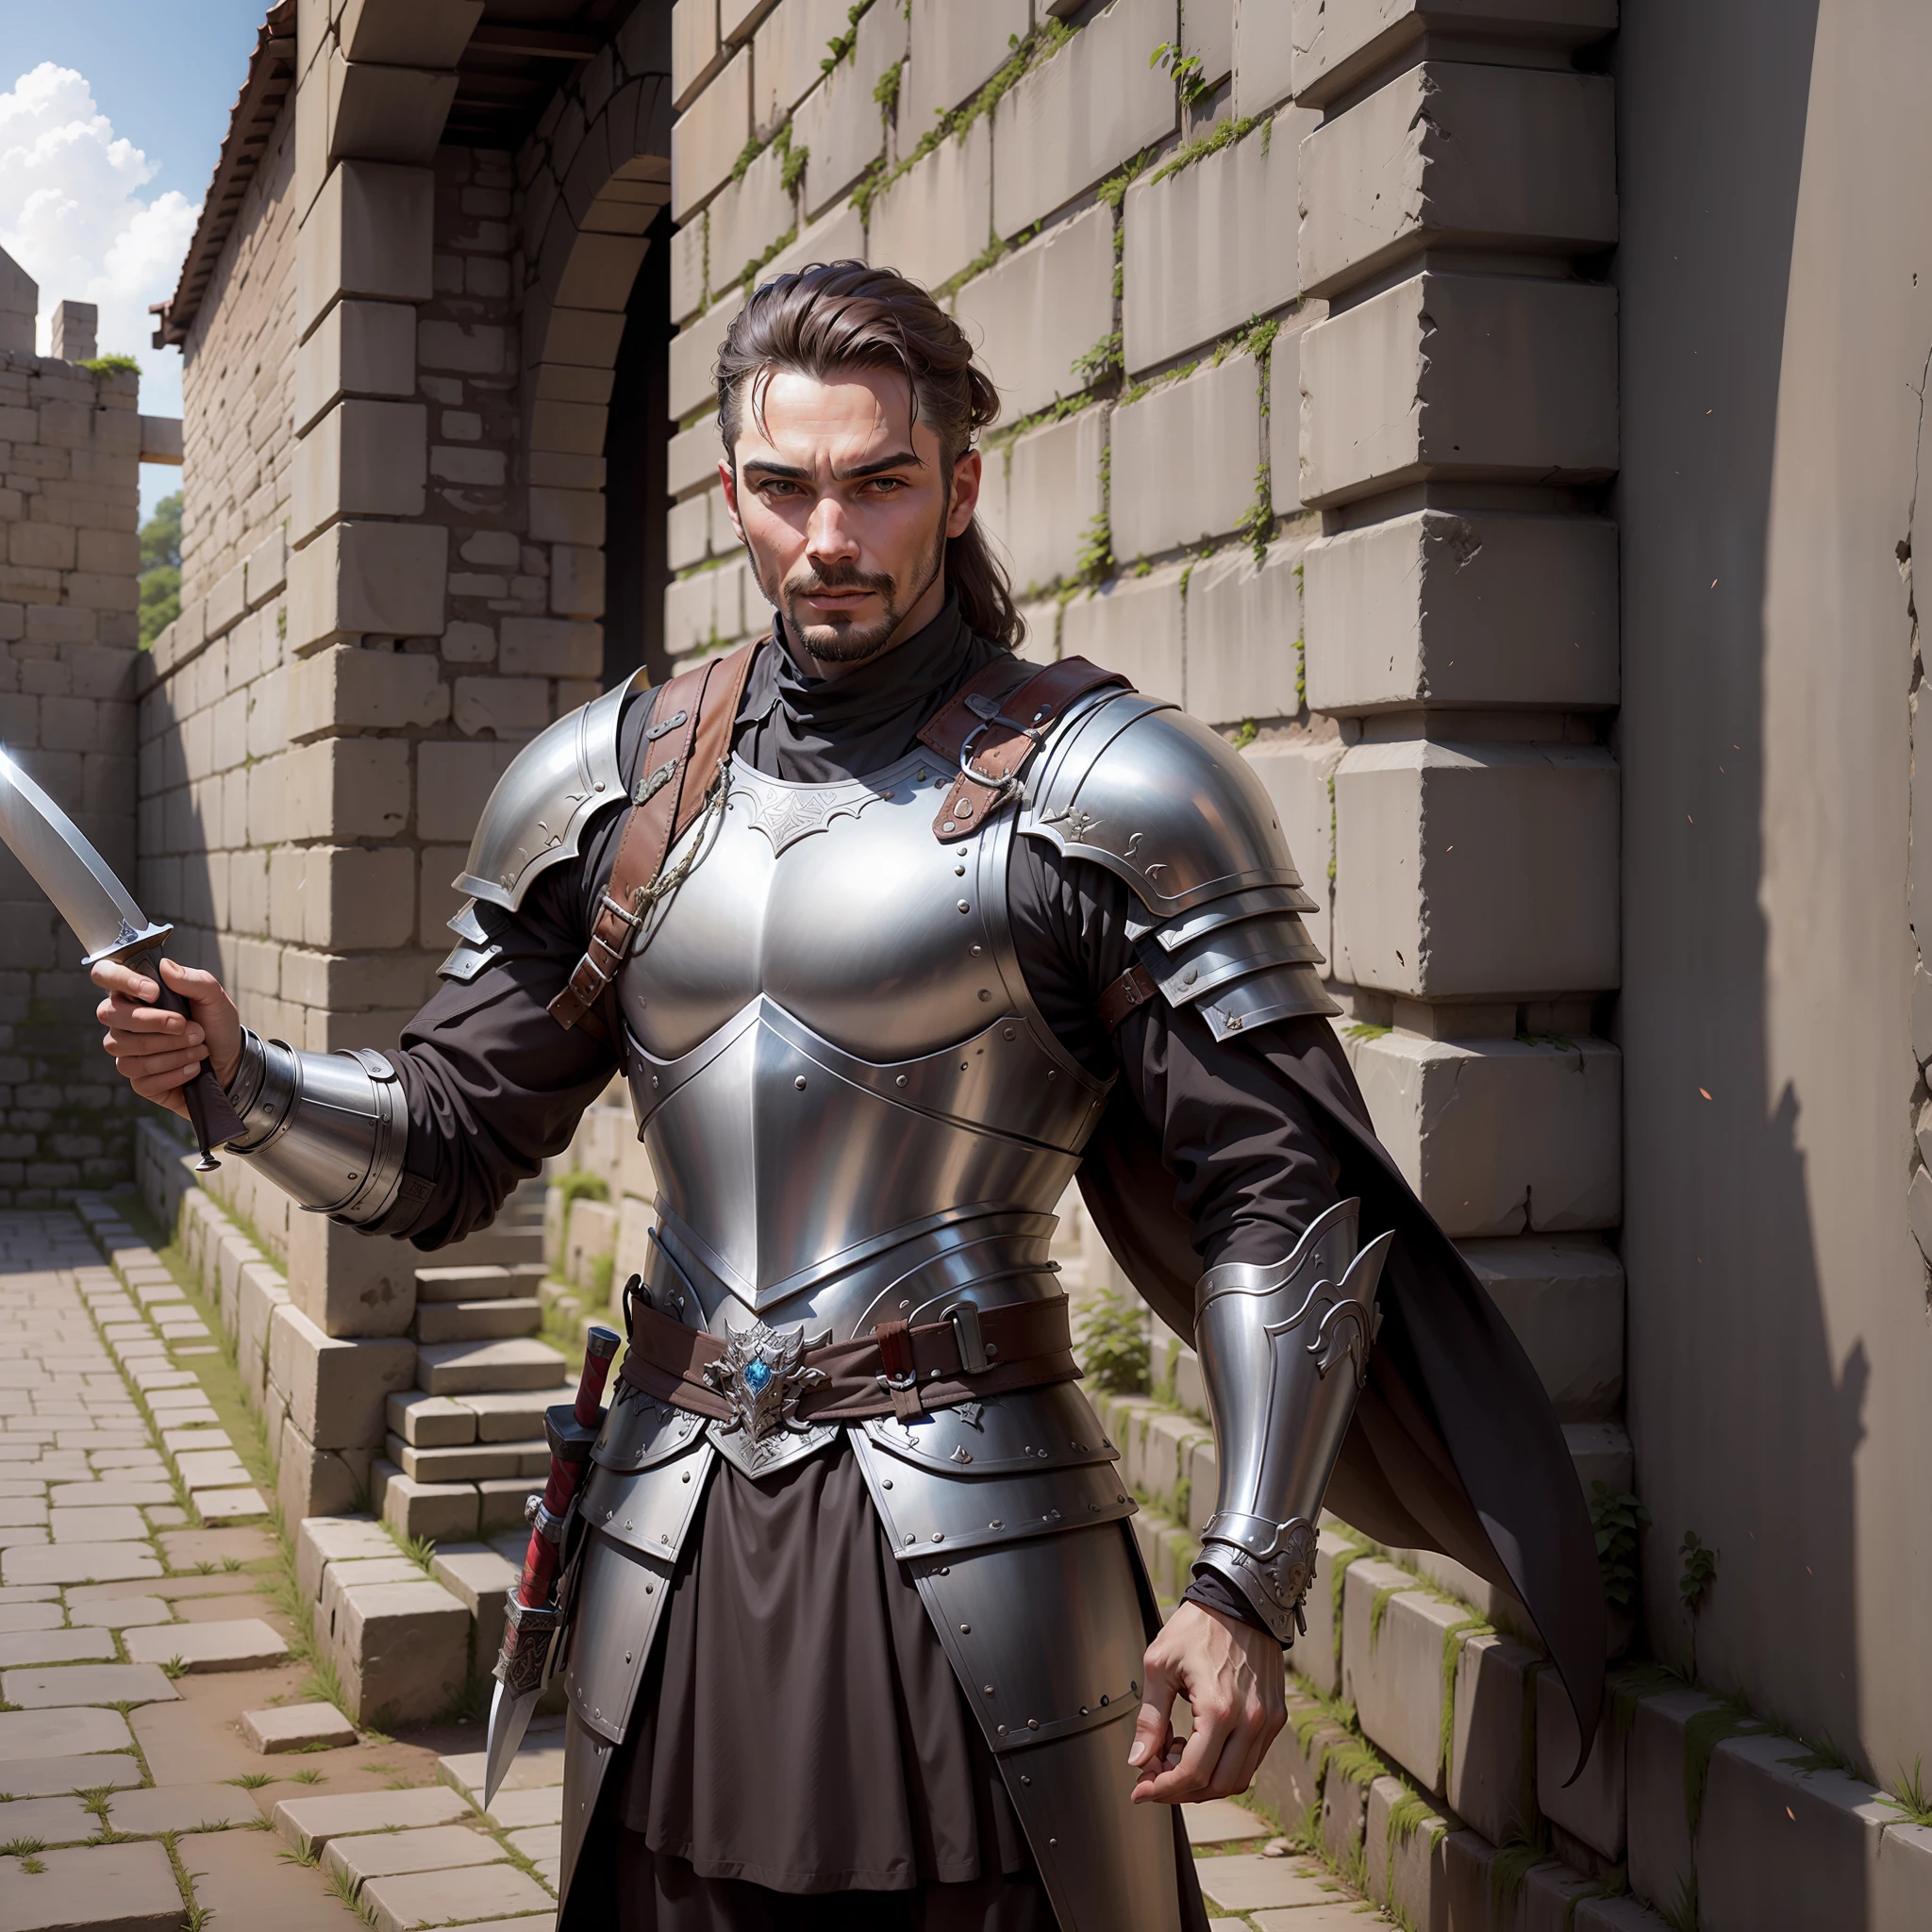 alte Stadtmauern, Ein Mann, in Rüstung gekleidet und mit einem langen Messer in der Hand